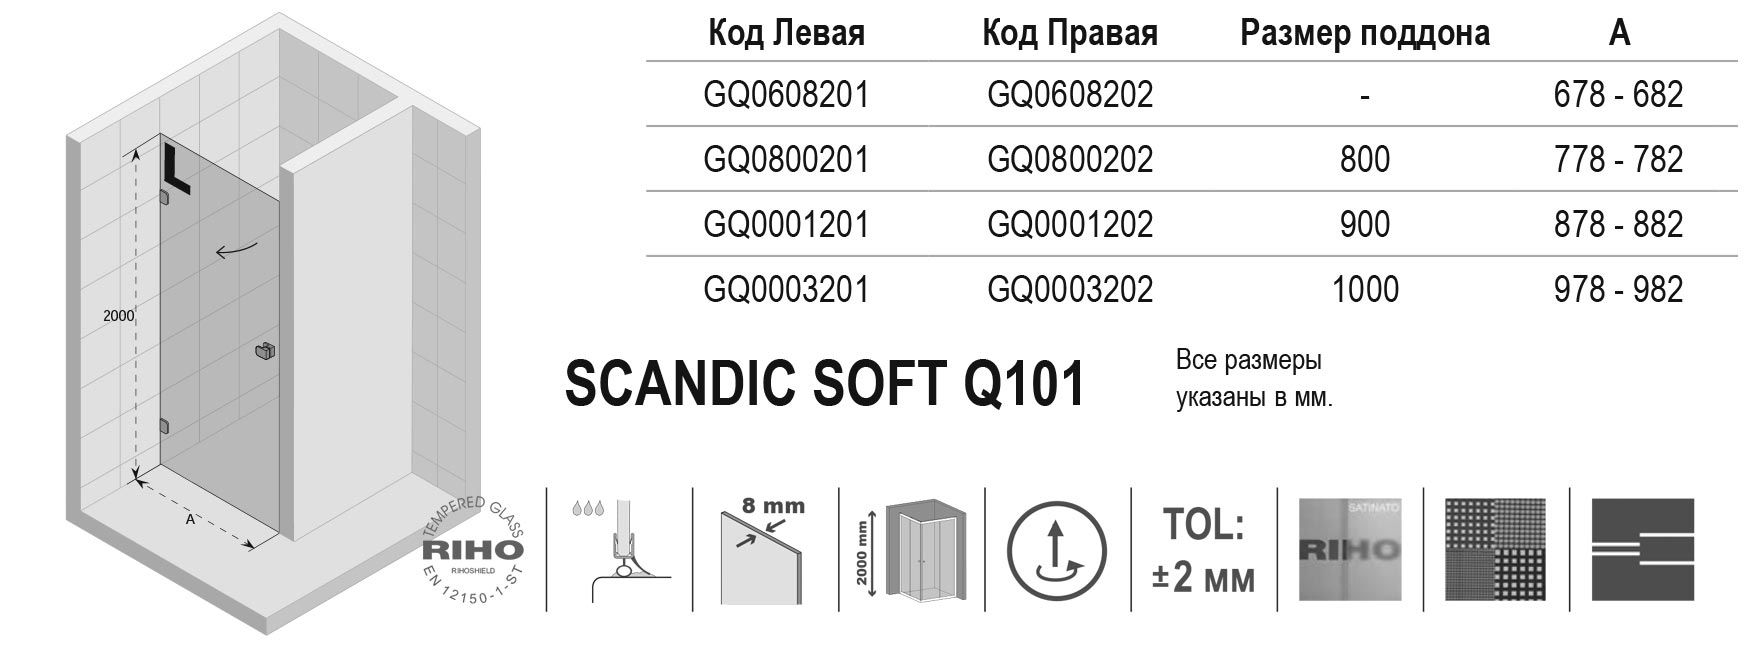 Чертёж Riho Scandic Soft Q101 GQ0800201